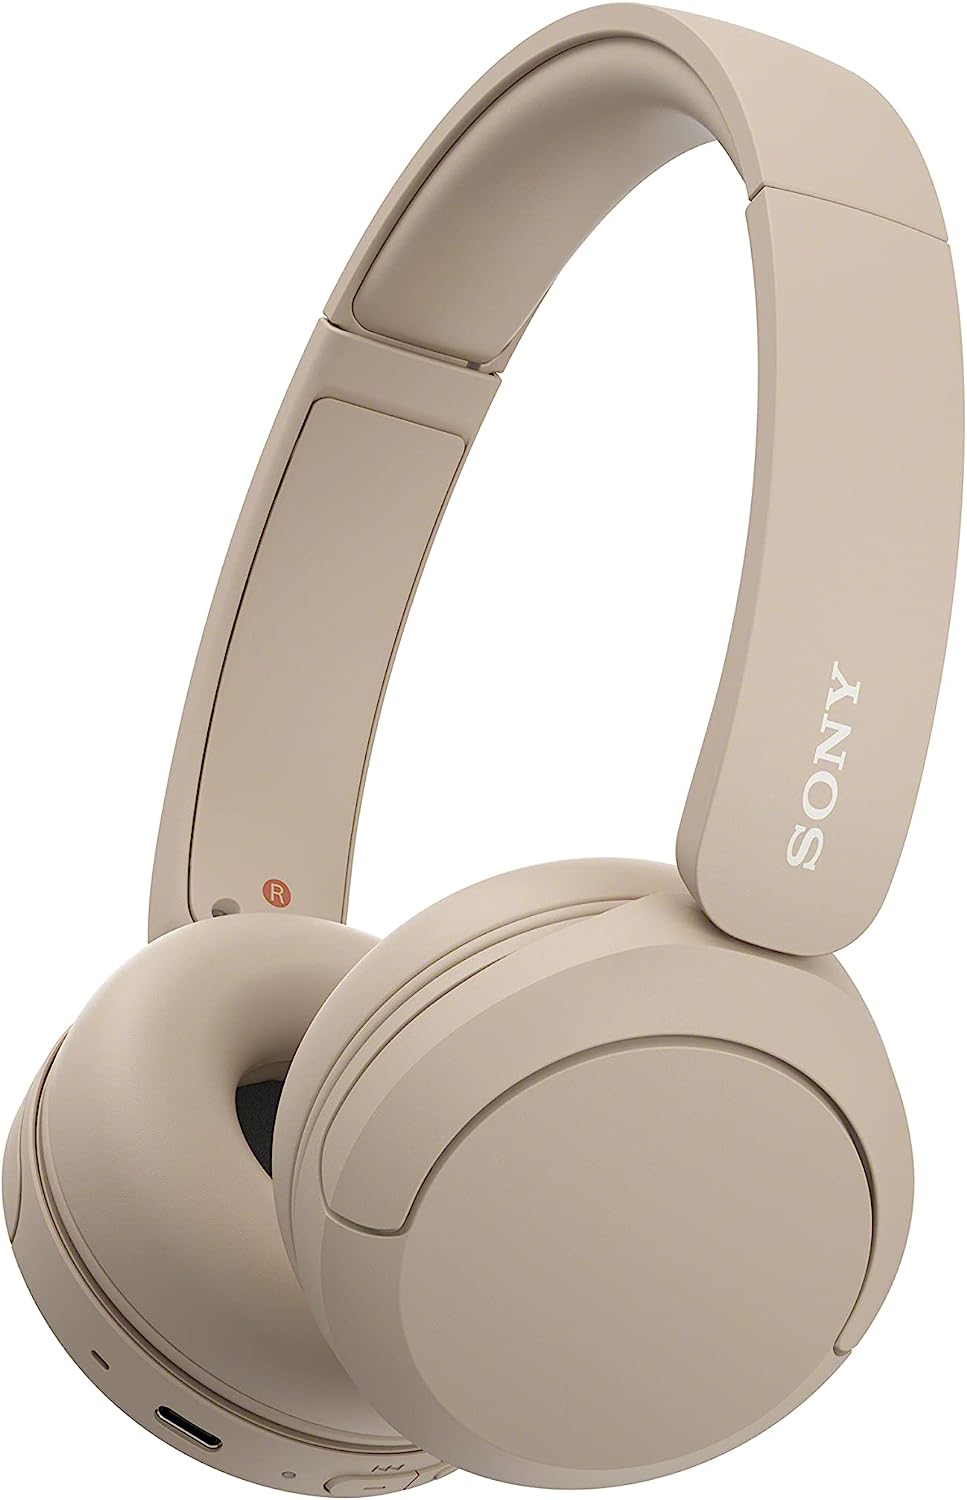 Sony WH-CH520C Kabellose Bluetooth-Kopfhörer Beige 